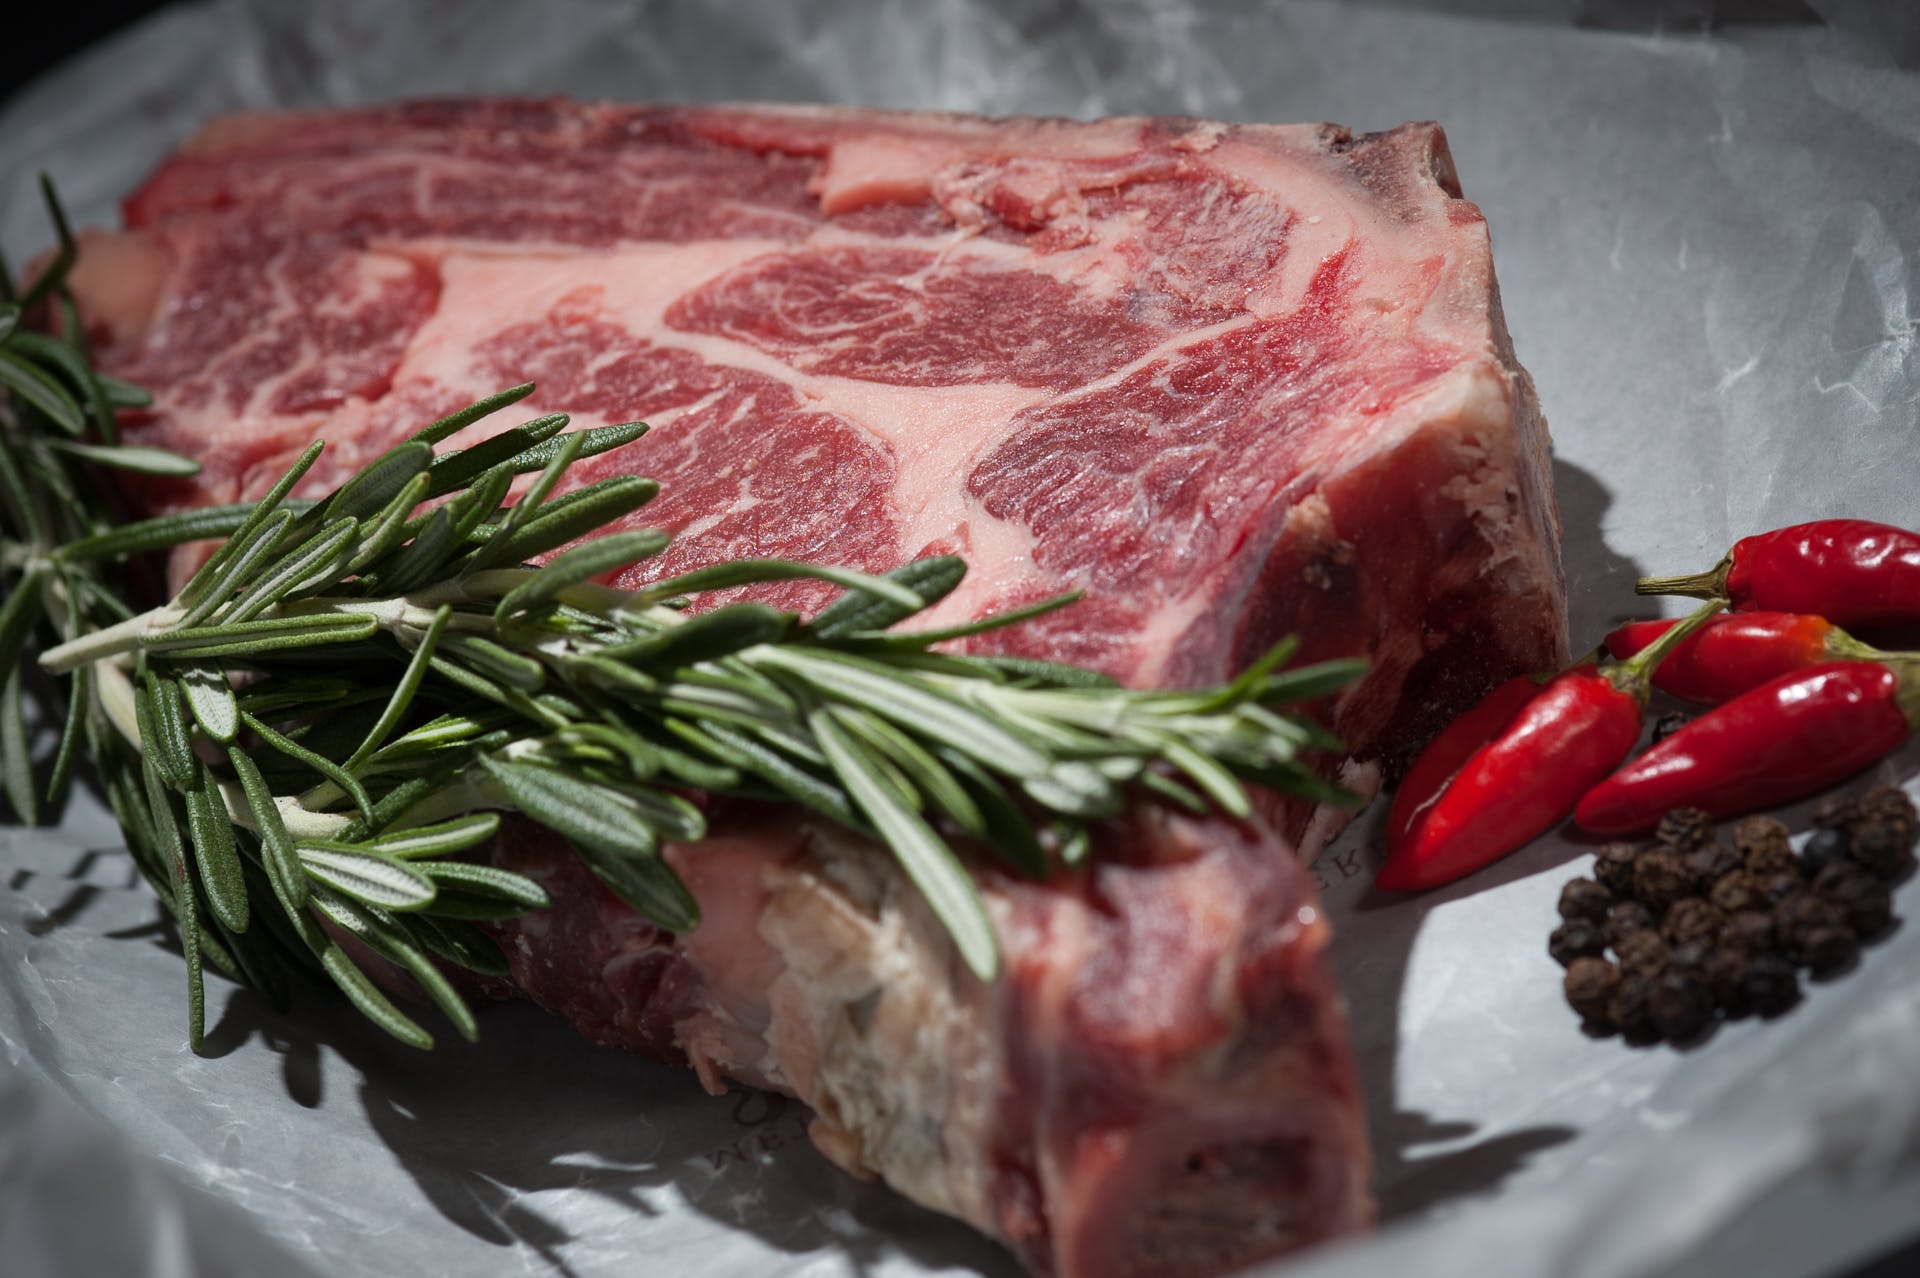 Piły elektryczne do mięsa i kości w gastronomii — na co zwrócić uwagę przy zakupie